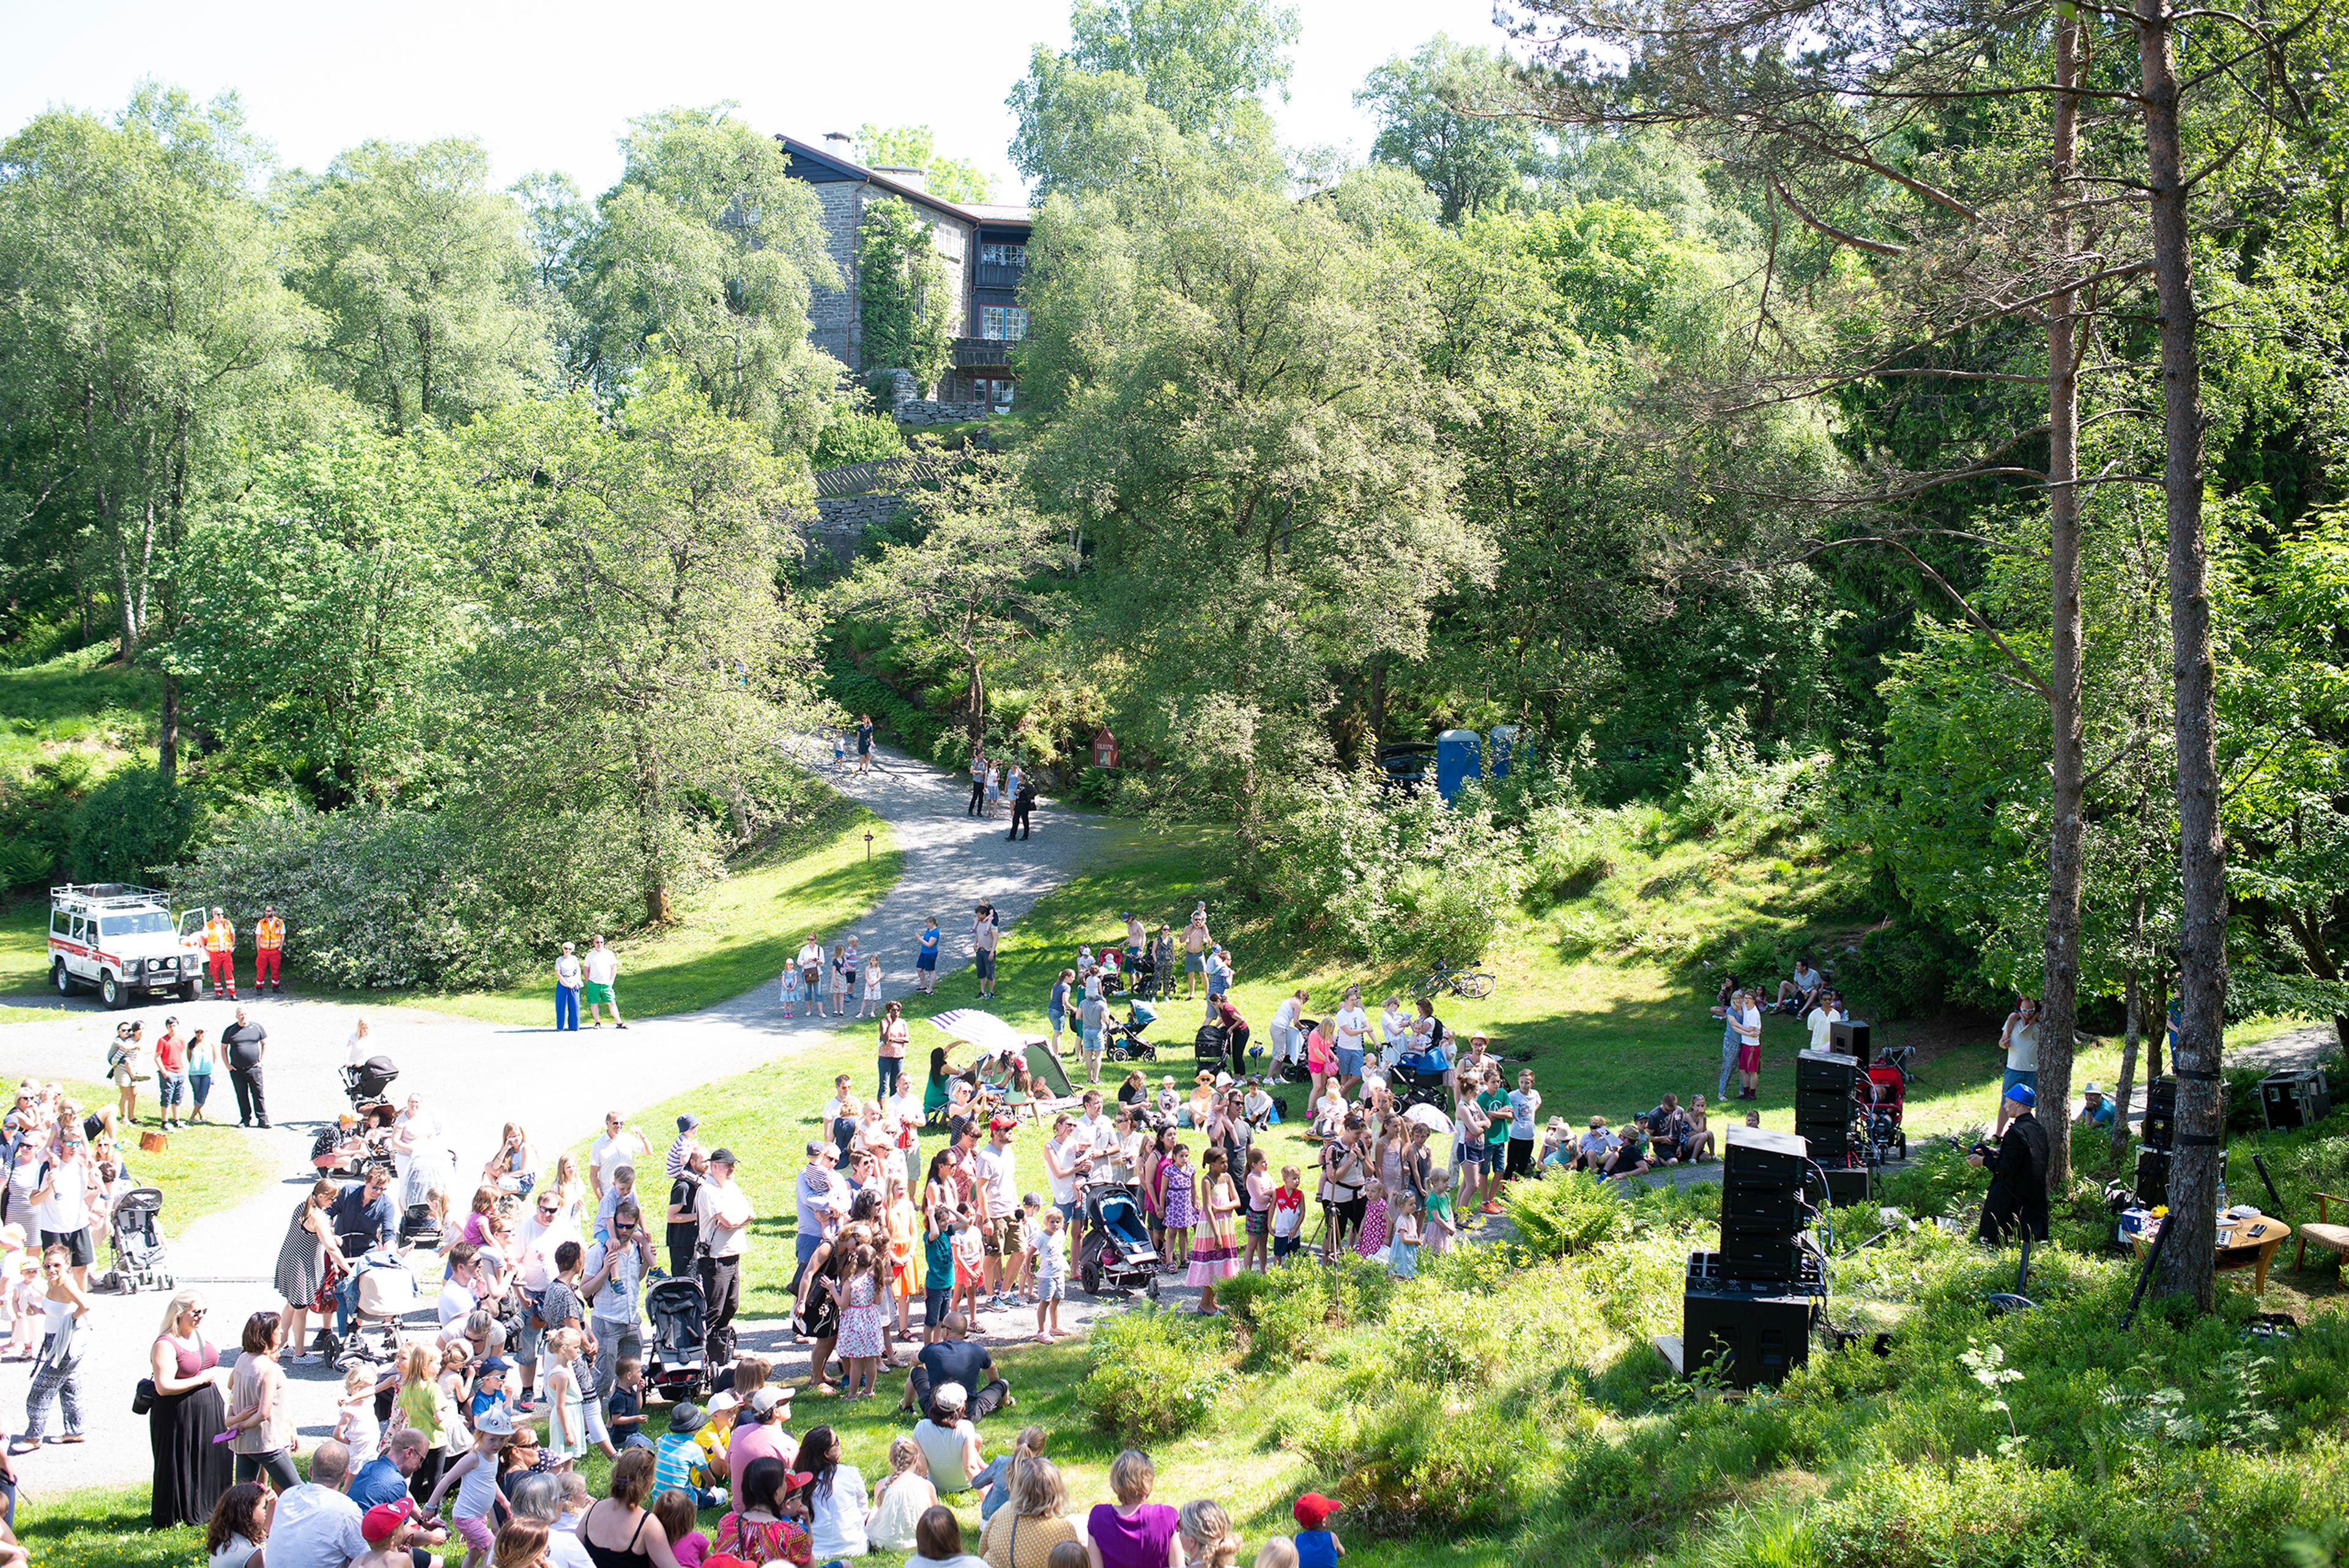 En stor gruppe mennesker på uteområdet på Siljustøl. Vi ser villaen i bakgrunnen og det er lyst sommervær.